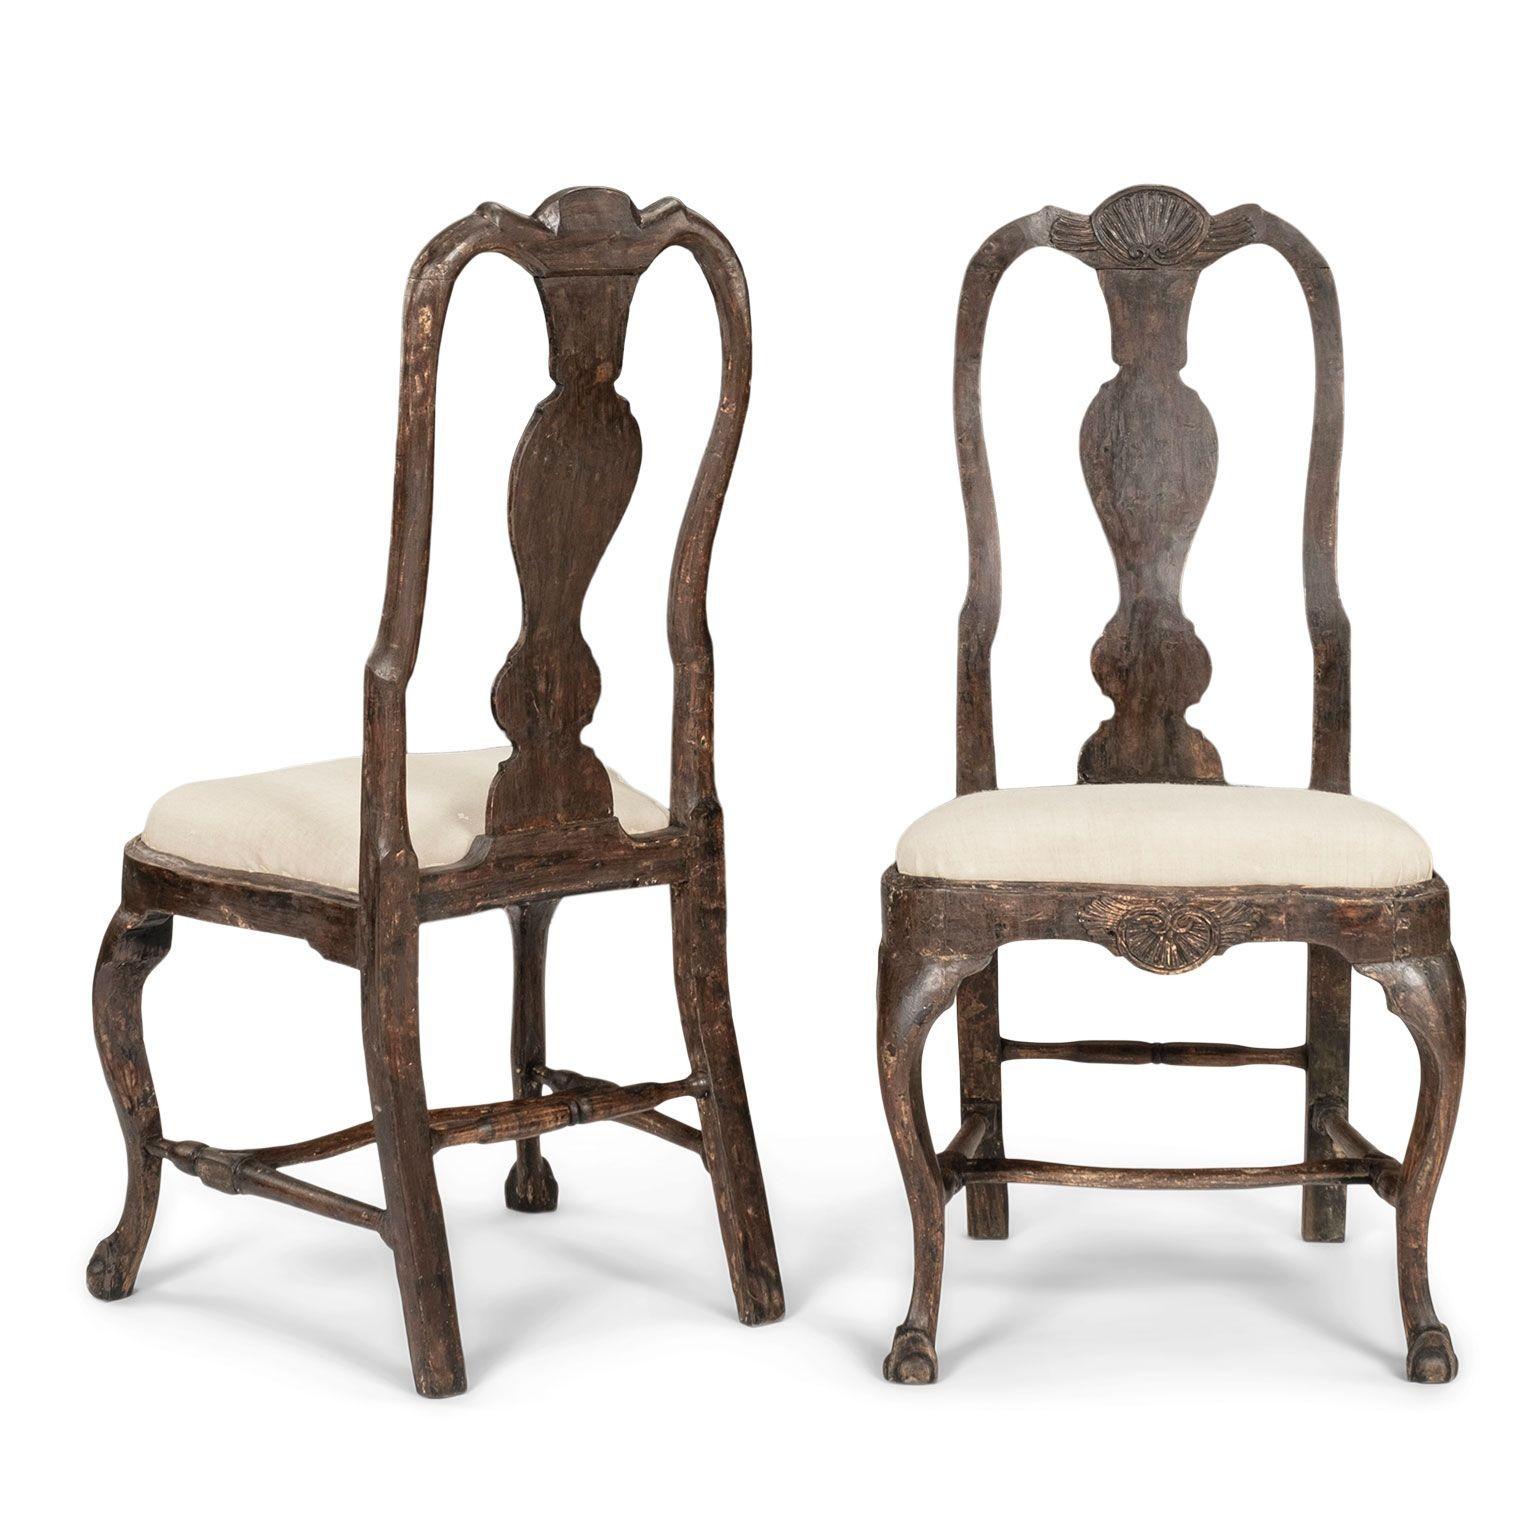 Paire de chaises suédoises d'époque rococo, sculptées à la main vers 1745-1774. Finition légèrement grattée pour retrouver les premières couches de peinture. Motif de coquillage sculpté sur la frise et la crête. Les pieds avant en cabriole reposent